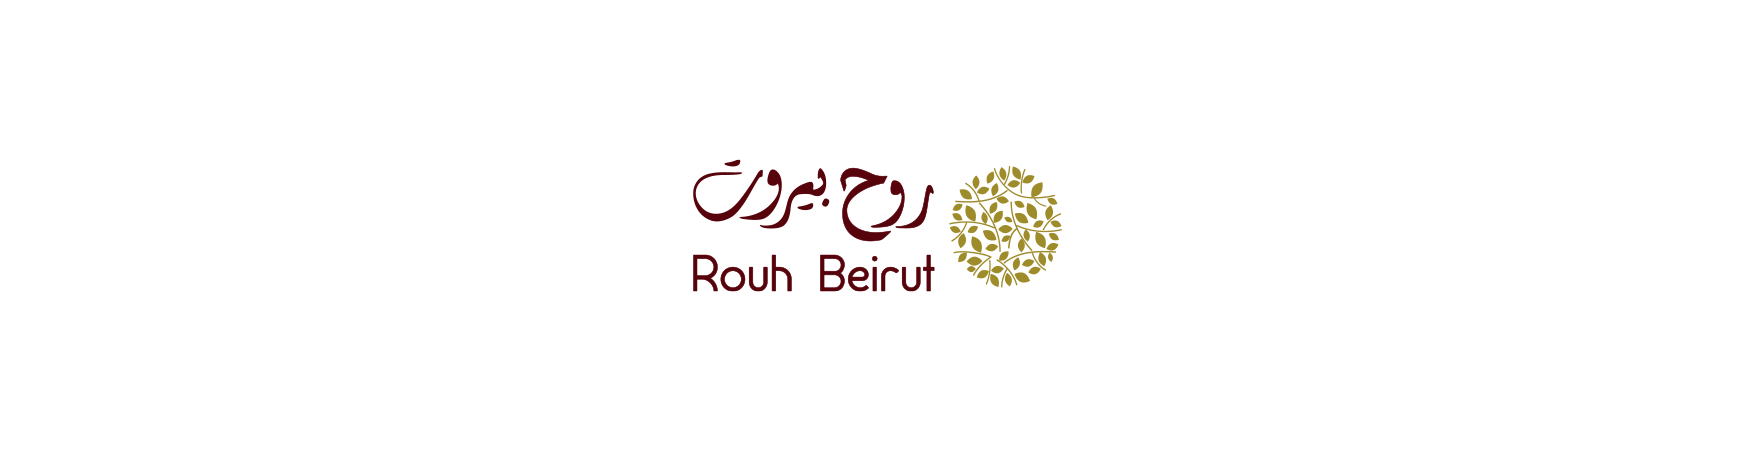 Rouh Beirut